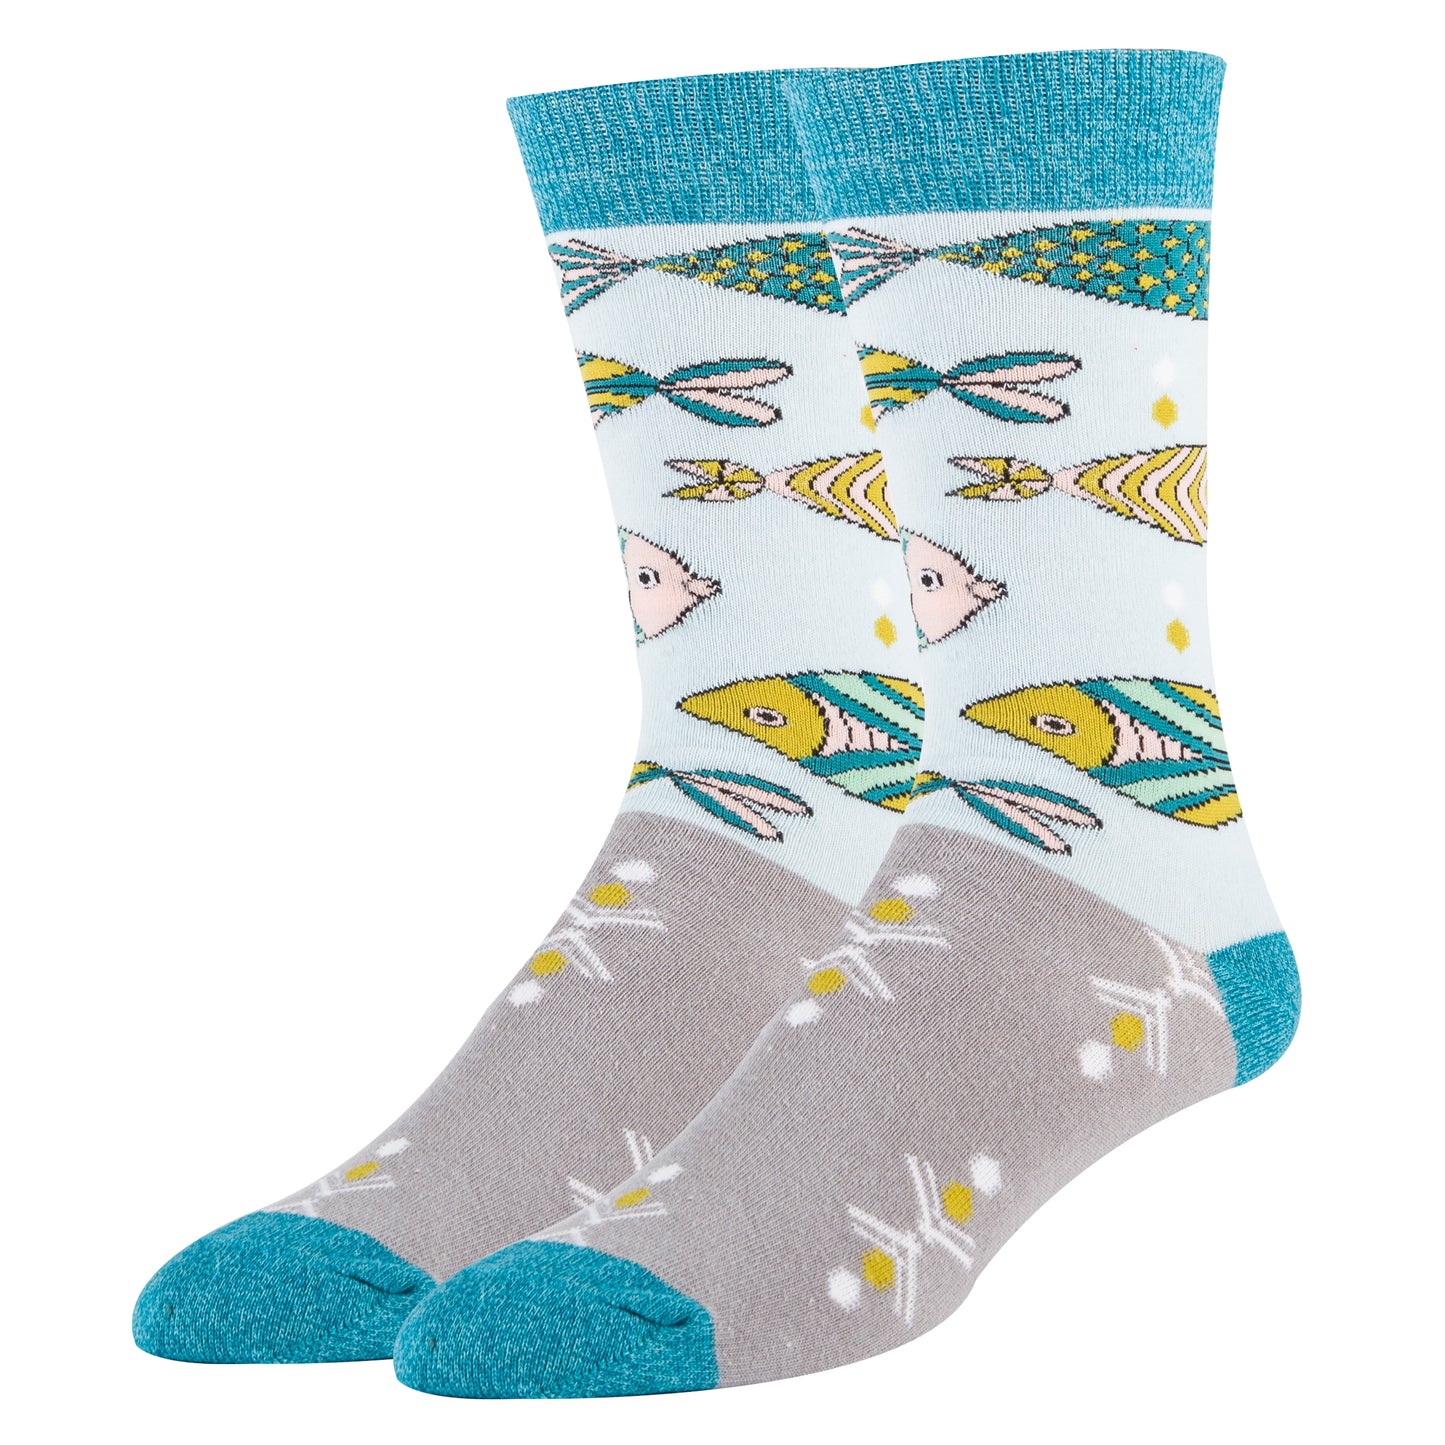 School of Fish - Sock It Up Sock Co